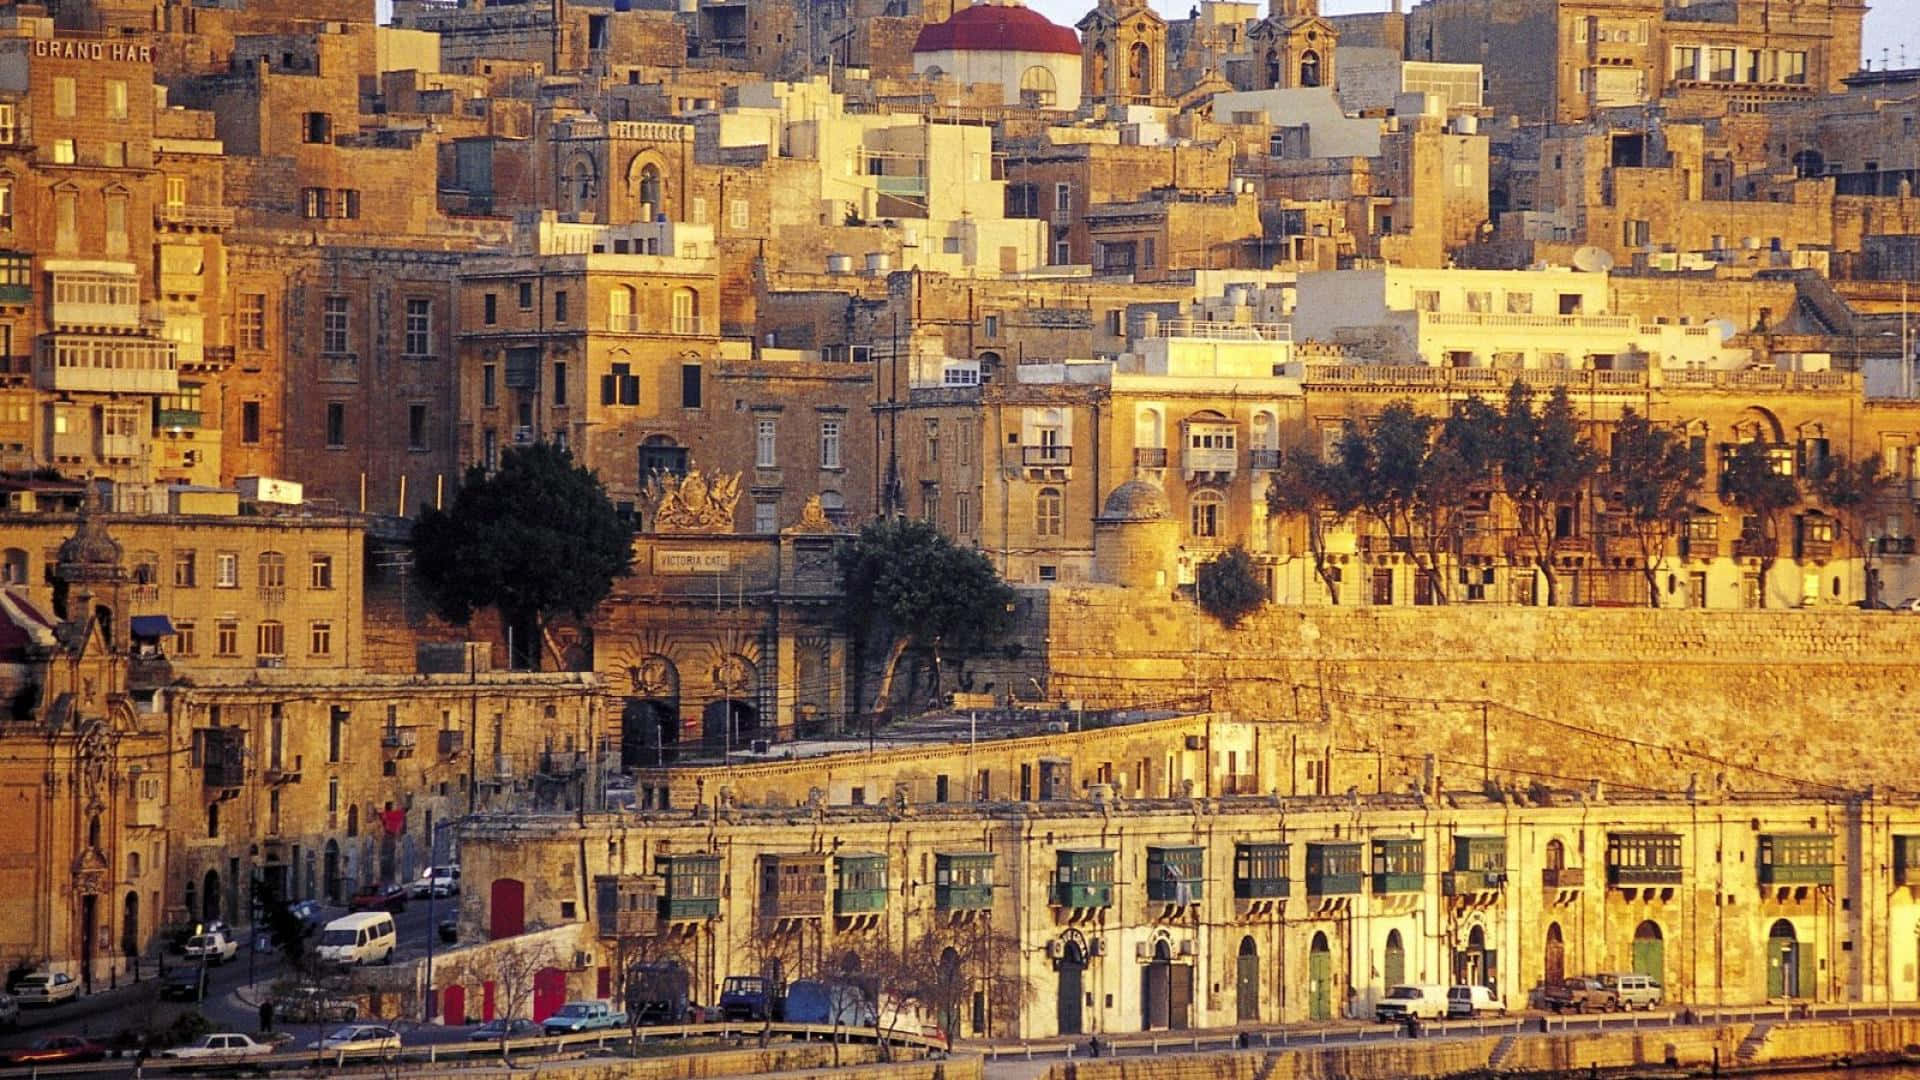 Vistapanoramica Della Bellissima Isola Di Malta